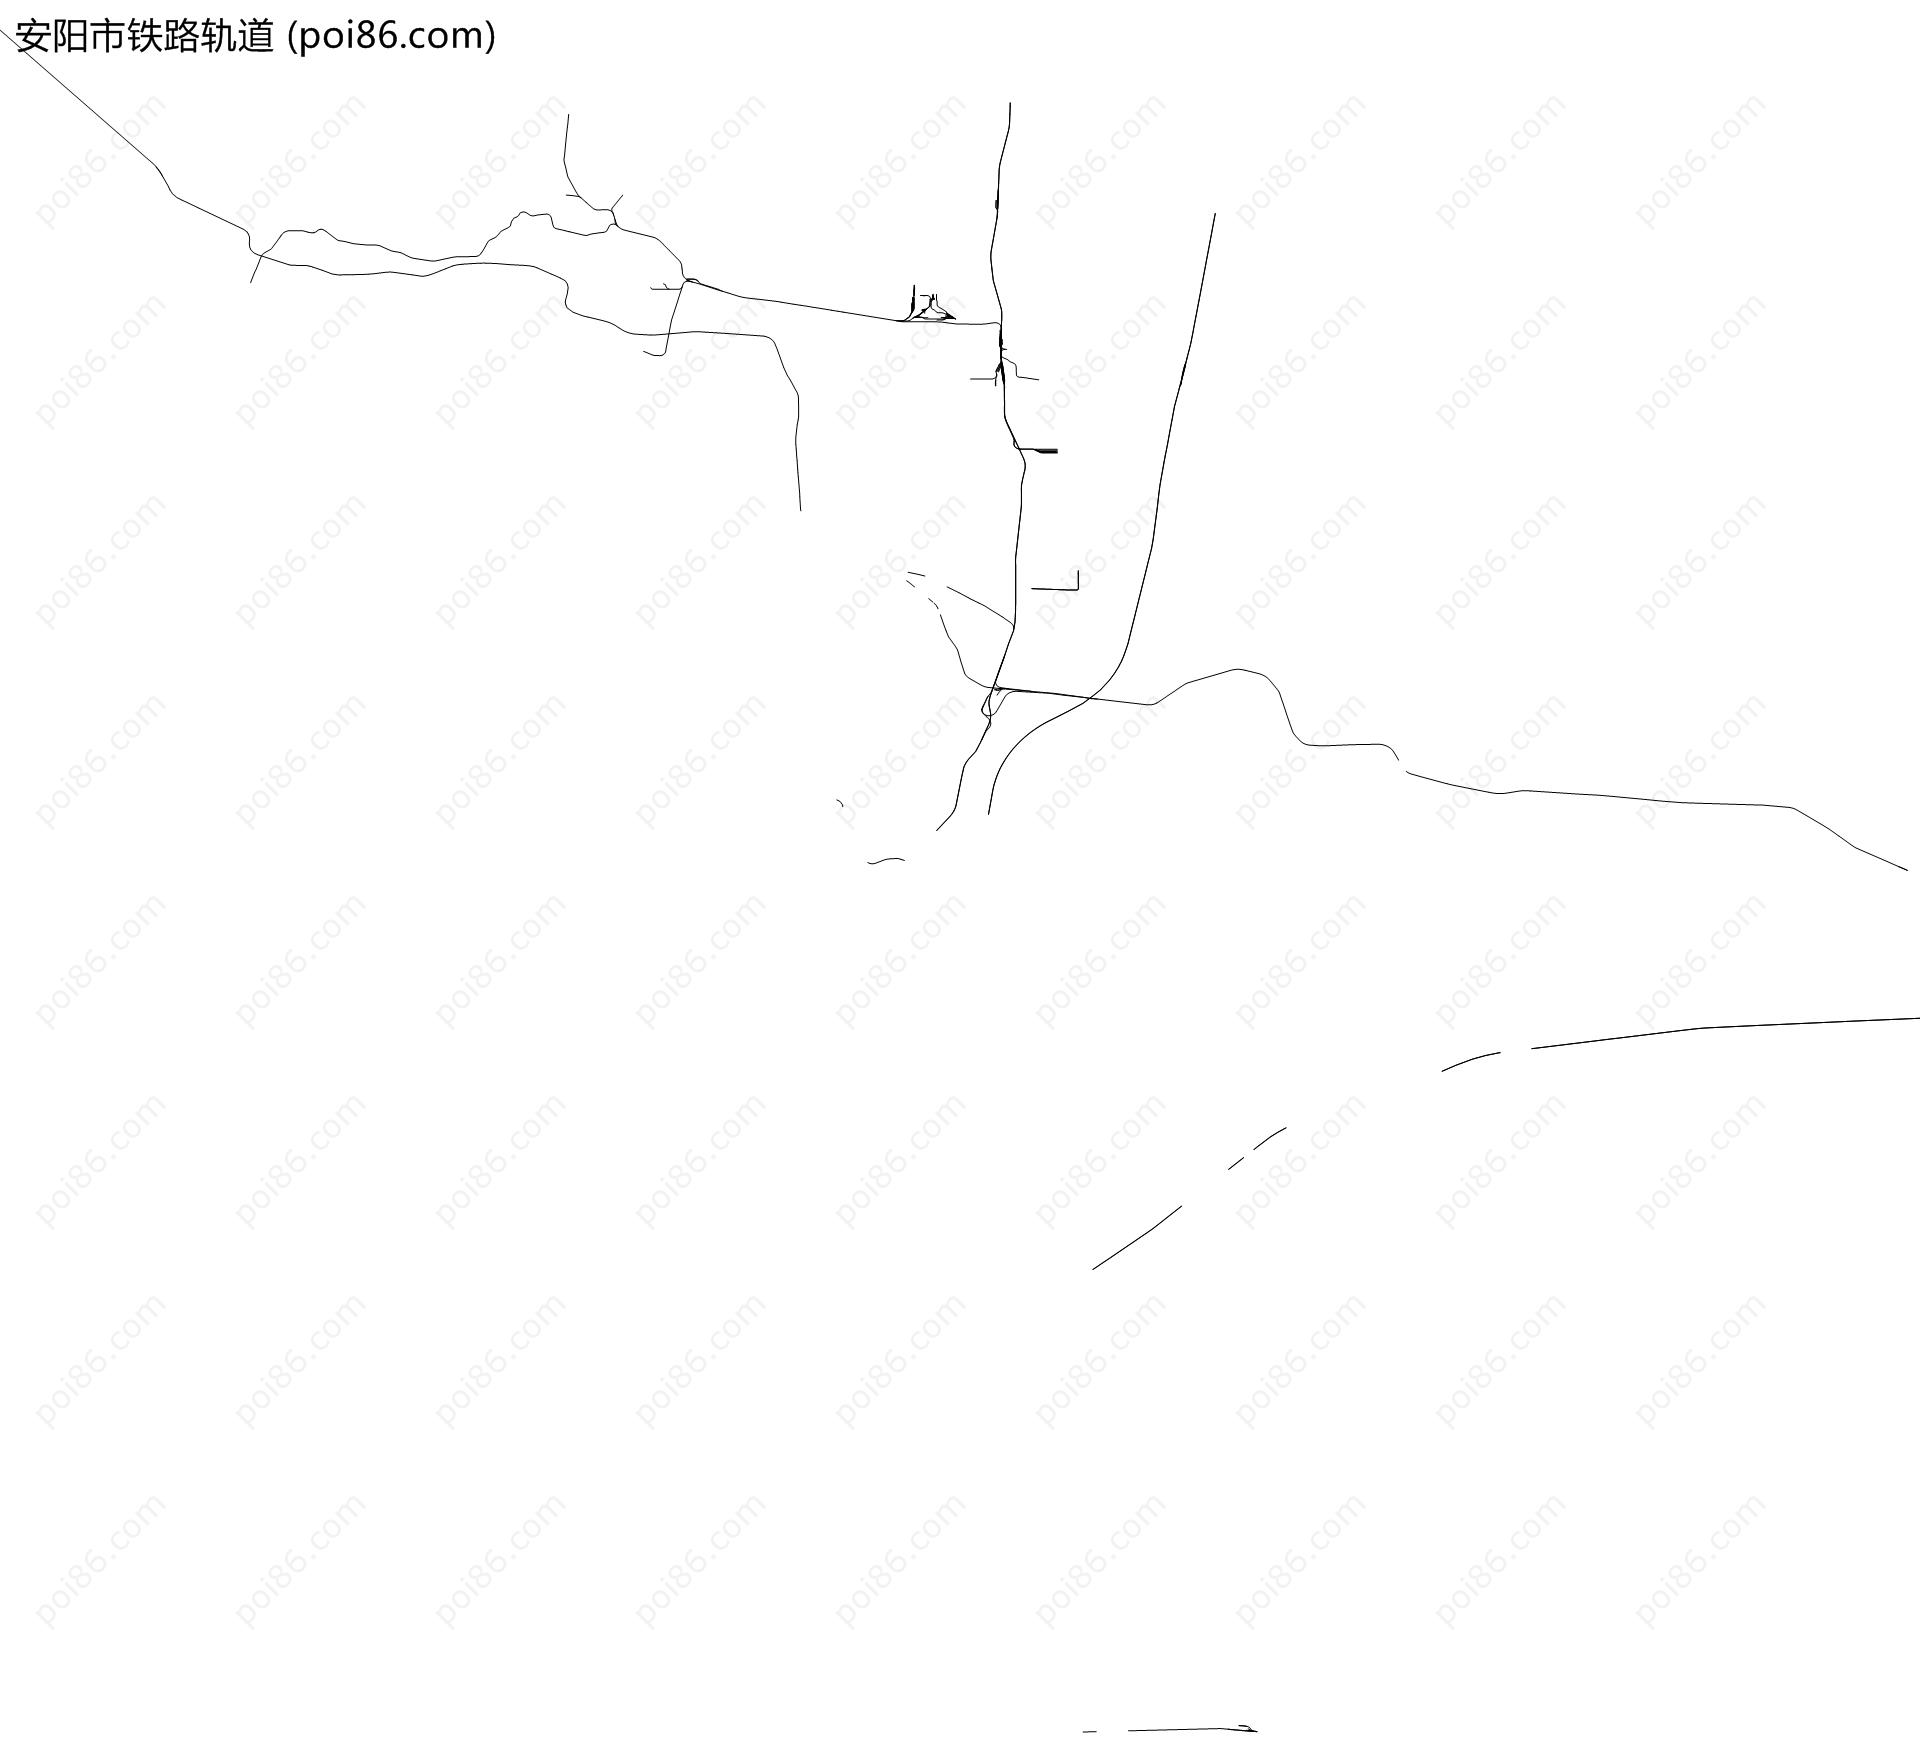 安阳市铁路轨道地图